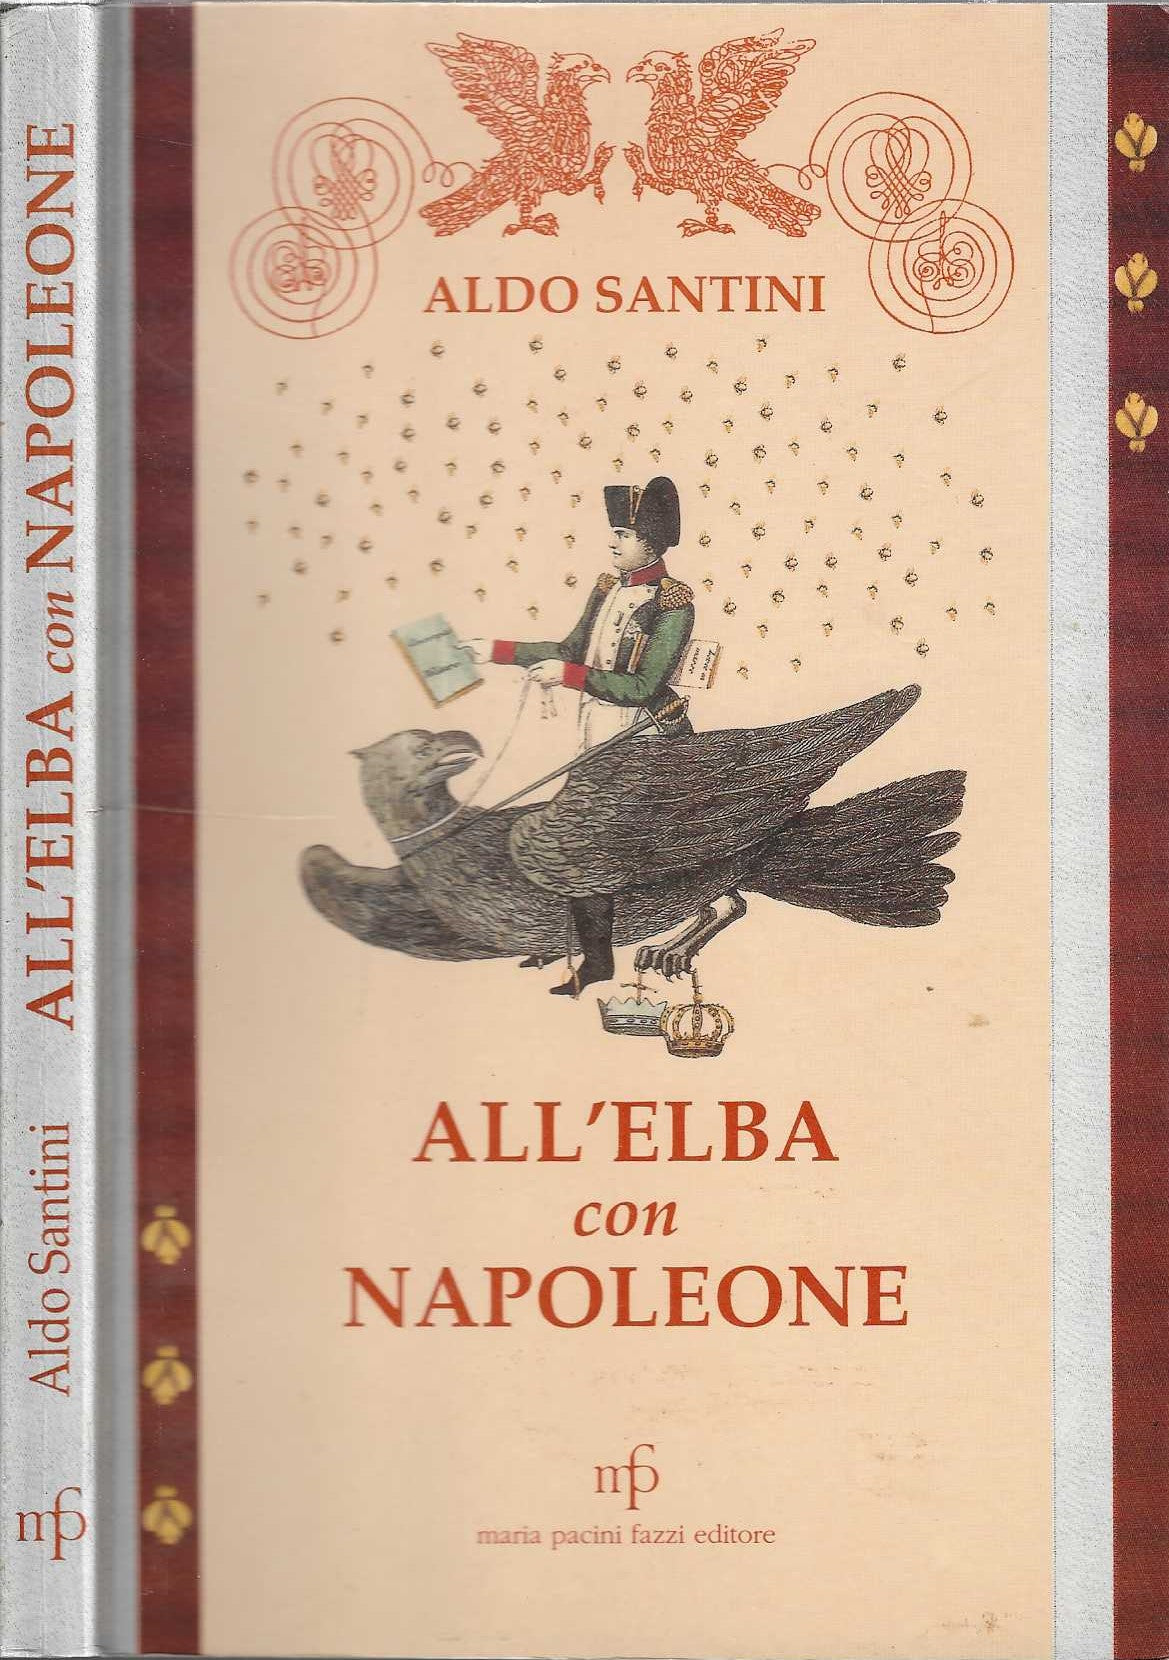 All'Elba con Napoleone - Aldo Santini